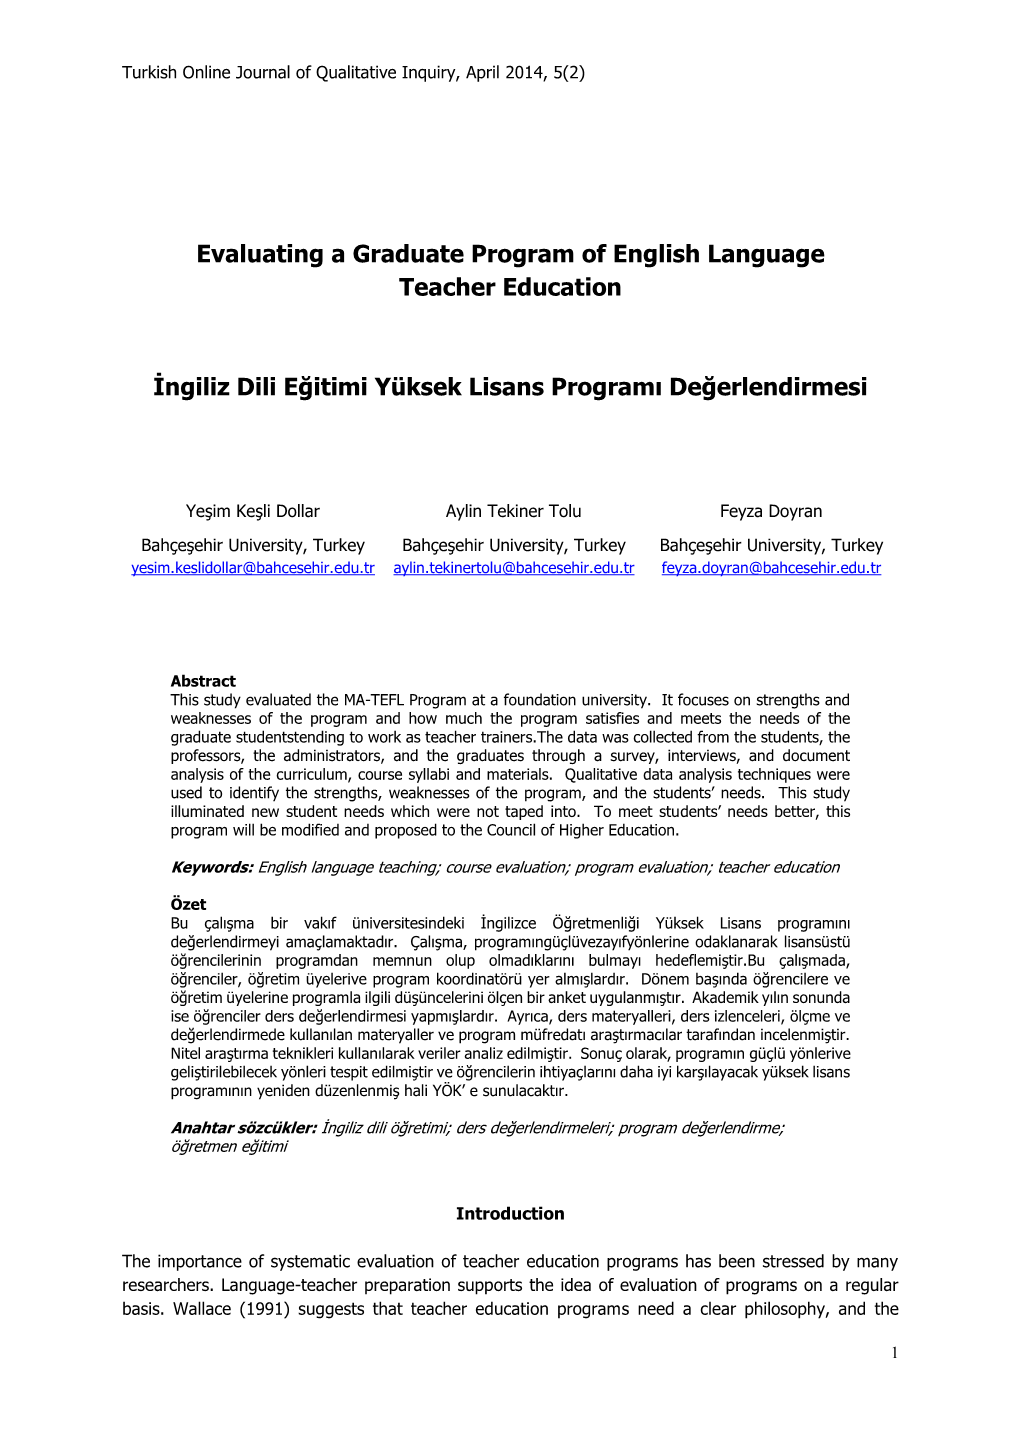 Evaluating a Graduate Program of English Language Teacher Education İngiliz Dili Eğitimi Yüksek Lisans Programı Değerlendi